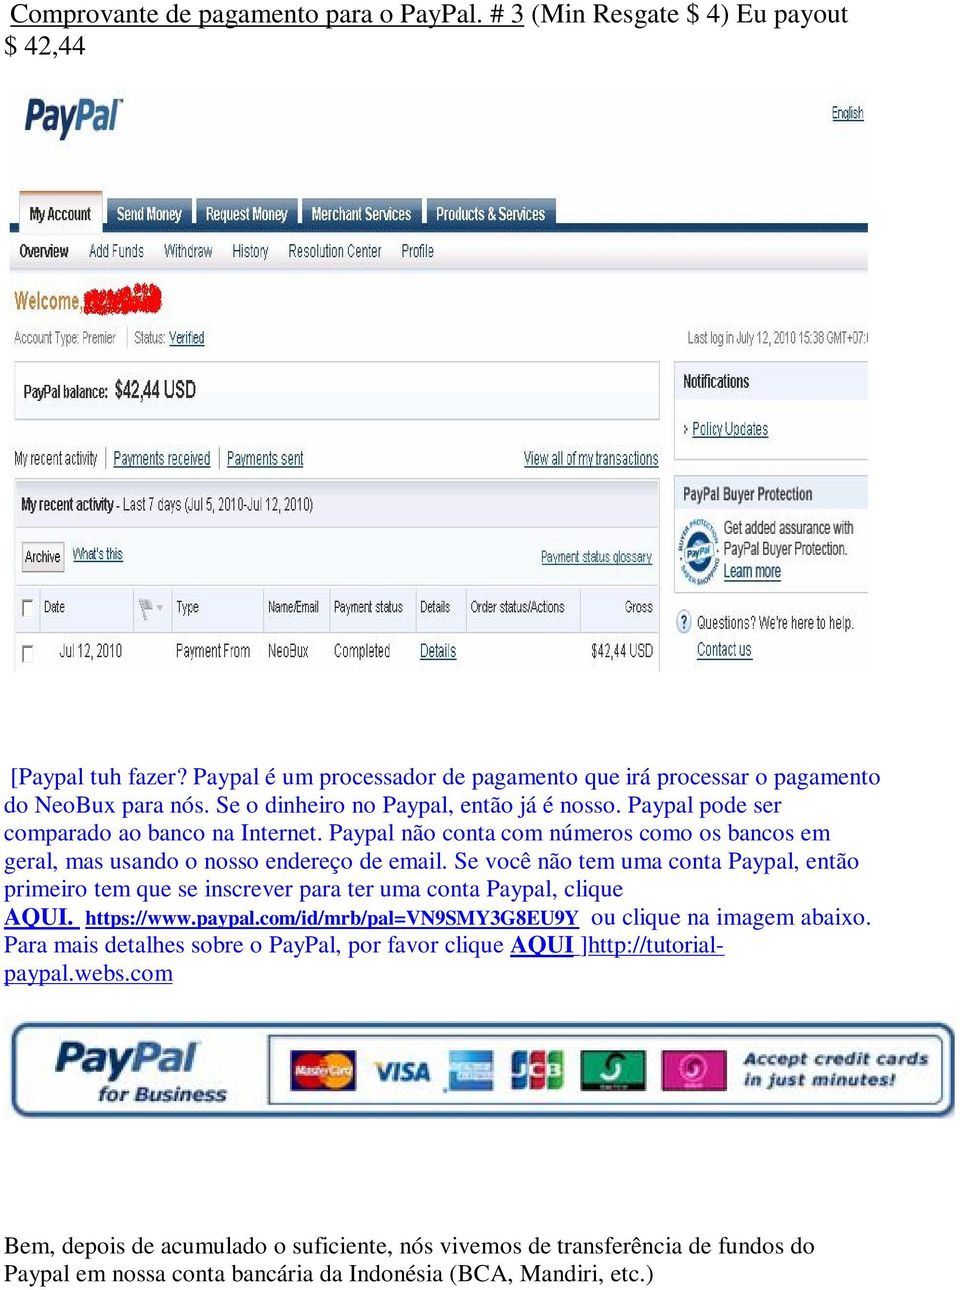 Se você não tem uma conta Paypal, então primeiro tem que se inscrever para ter uma conta Paypal, clique AQUI. https://www.paypal.com/id/mrb/pal=vn9smy3g8eu9y ou clique na imagem abaixo.